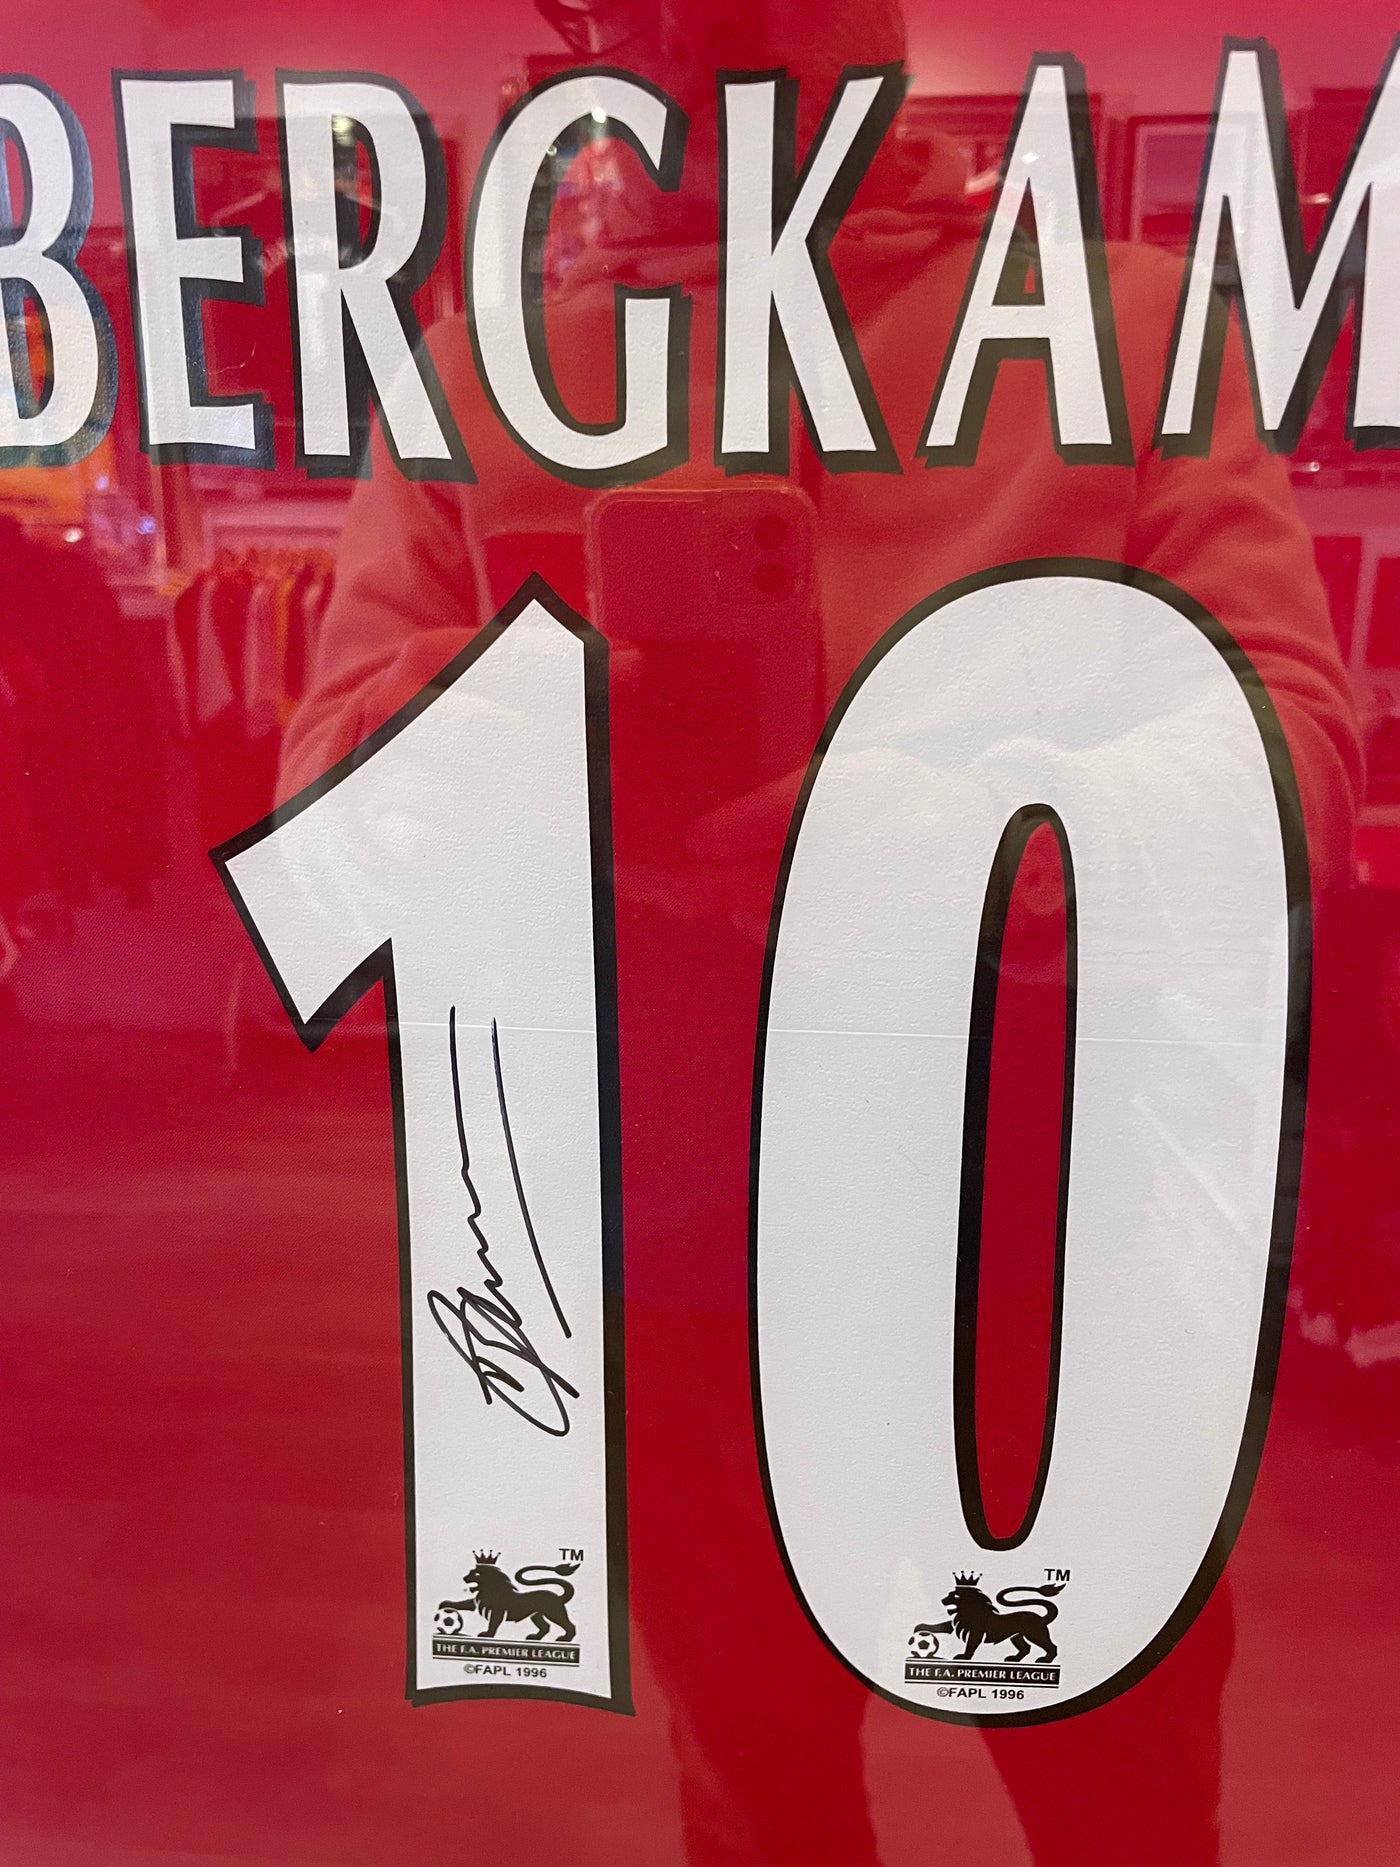 Bergkamp 2002/3 invincible shirt